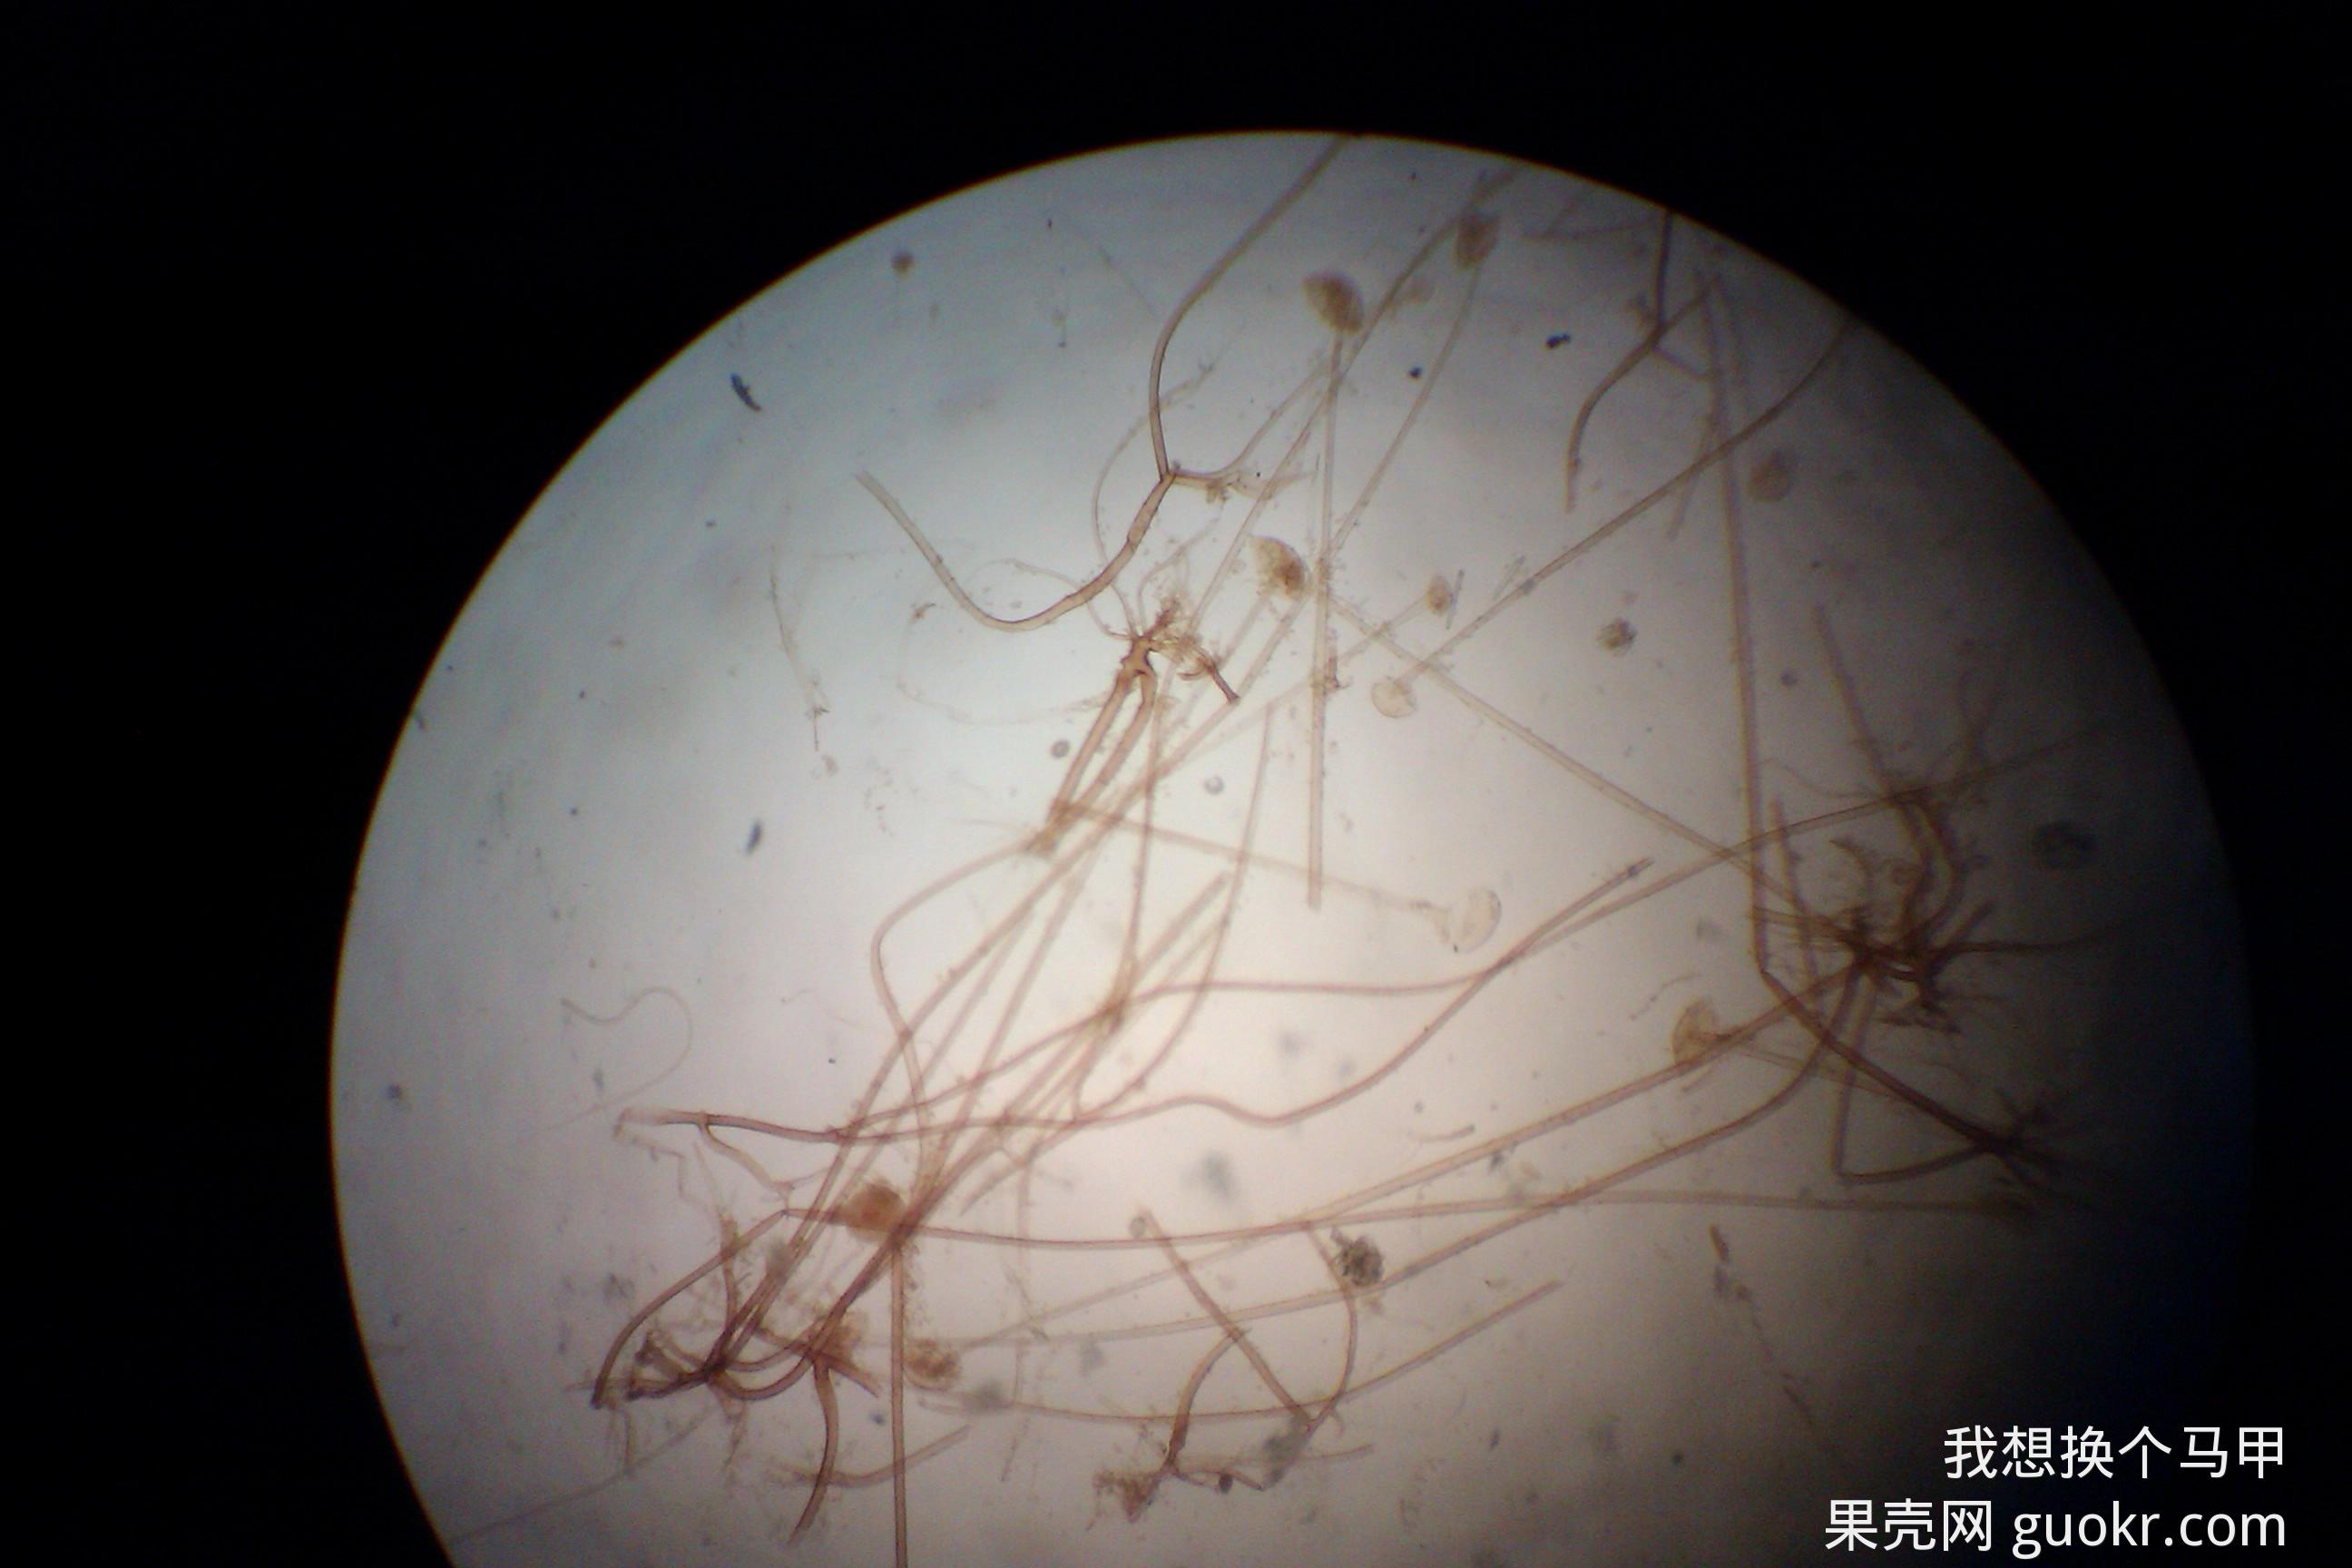 毛霉属无假根和匍匐丝,但是显微镜下看到的毛霉上的根